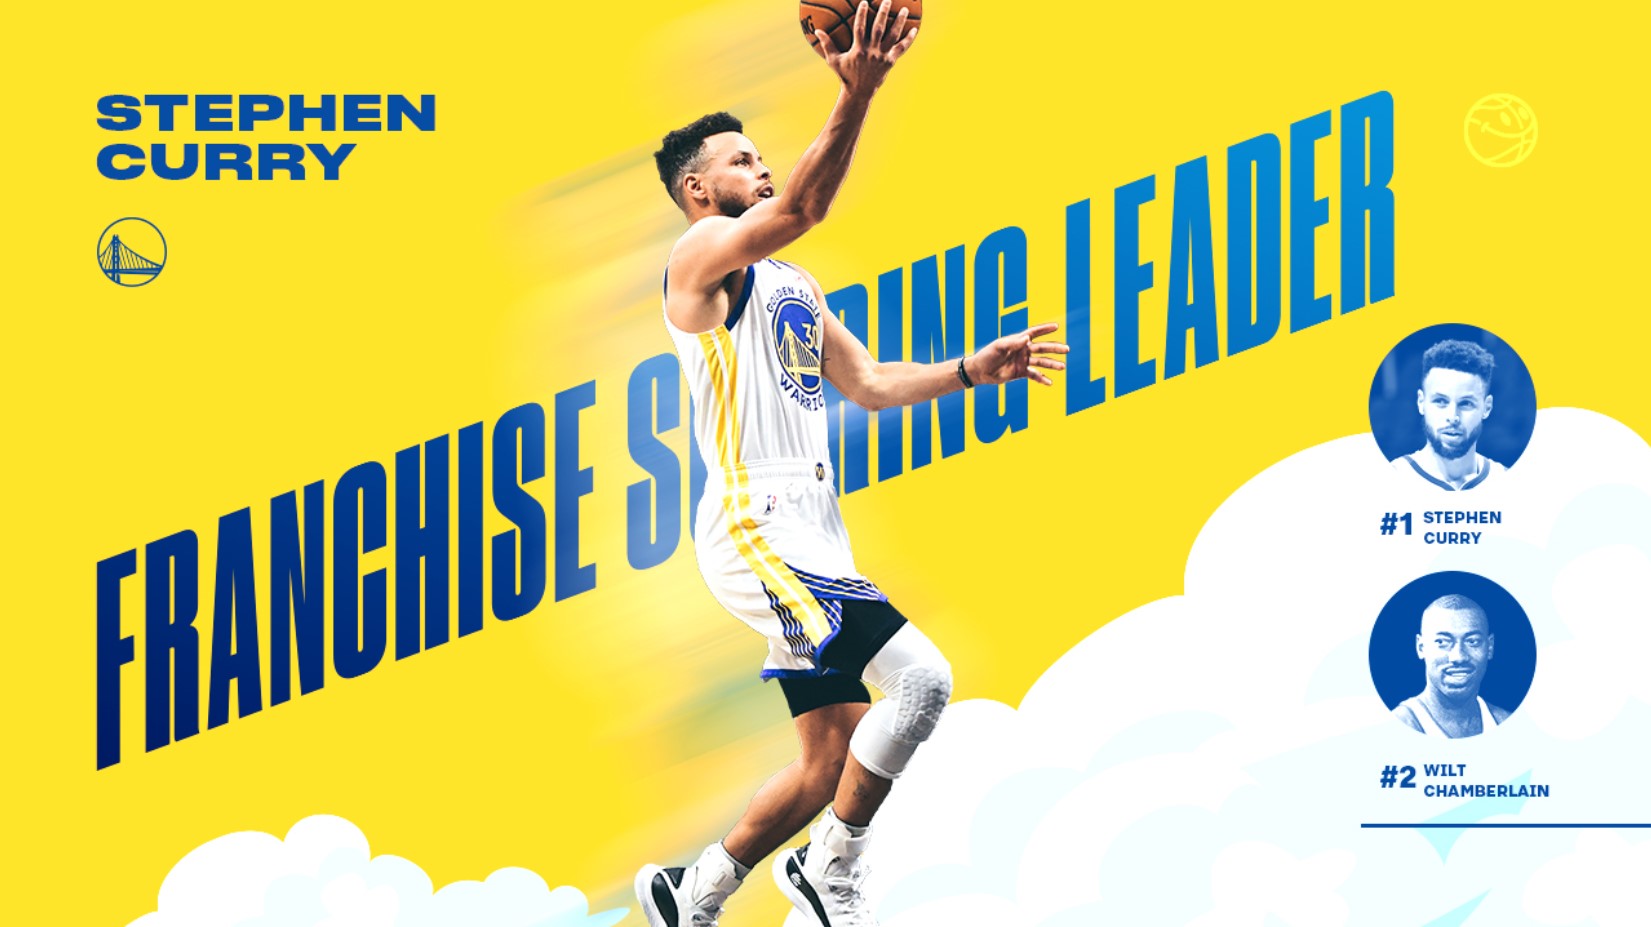 Vượt huyền thoại Wilt Chamberlain, Stephen Curry trở thành cầu thủ vĩ đại nhất lịch sử Golden State Warriors - Ảnh 1